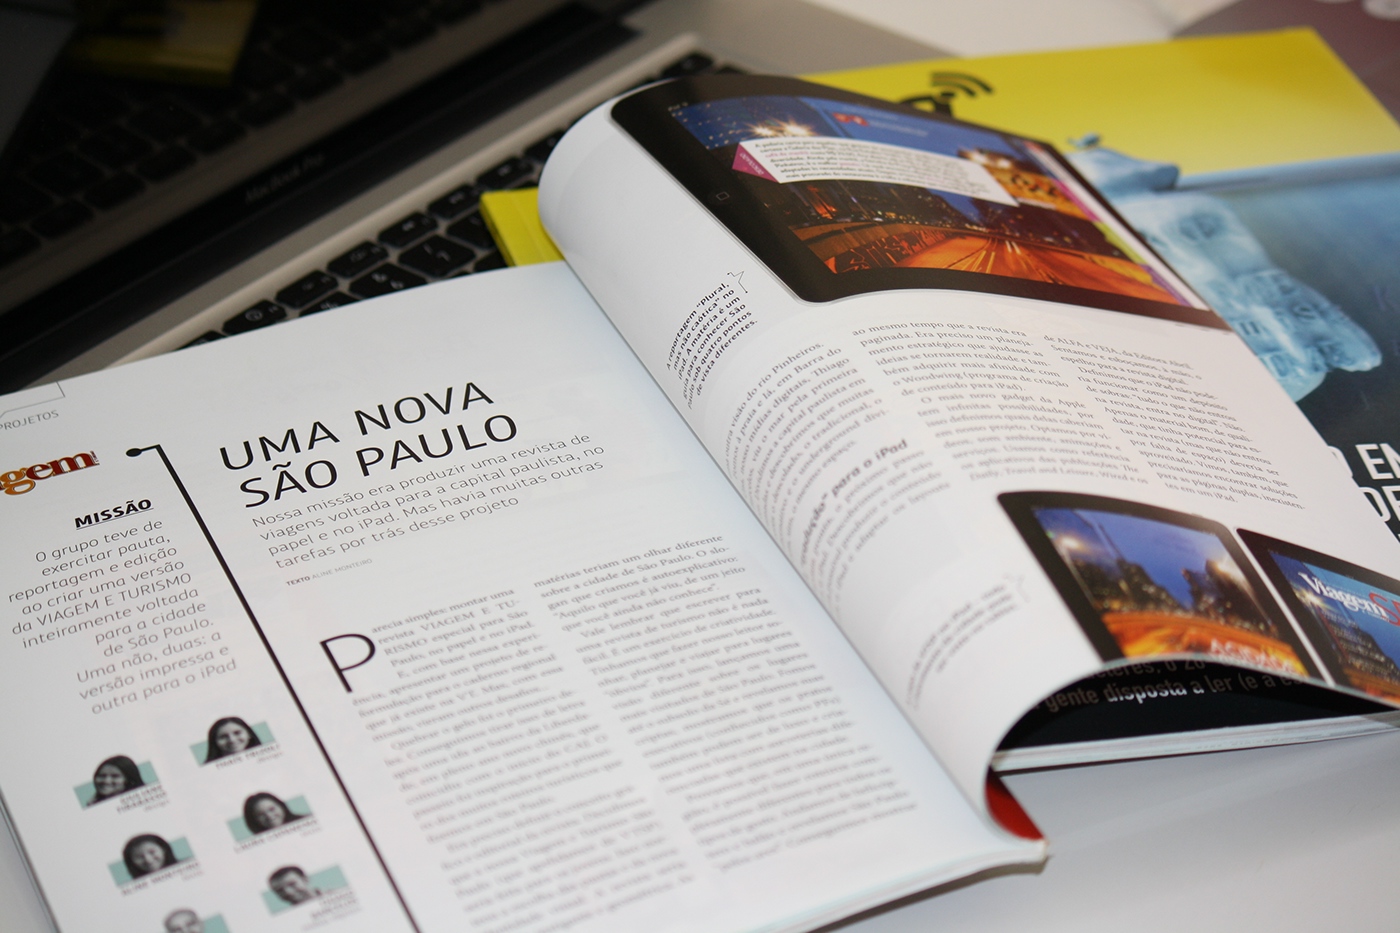 Plug revista magazine caj edição de arte art edition jornalismo editorial